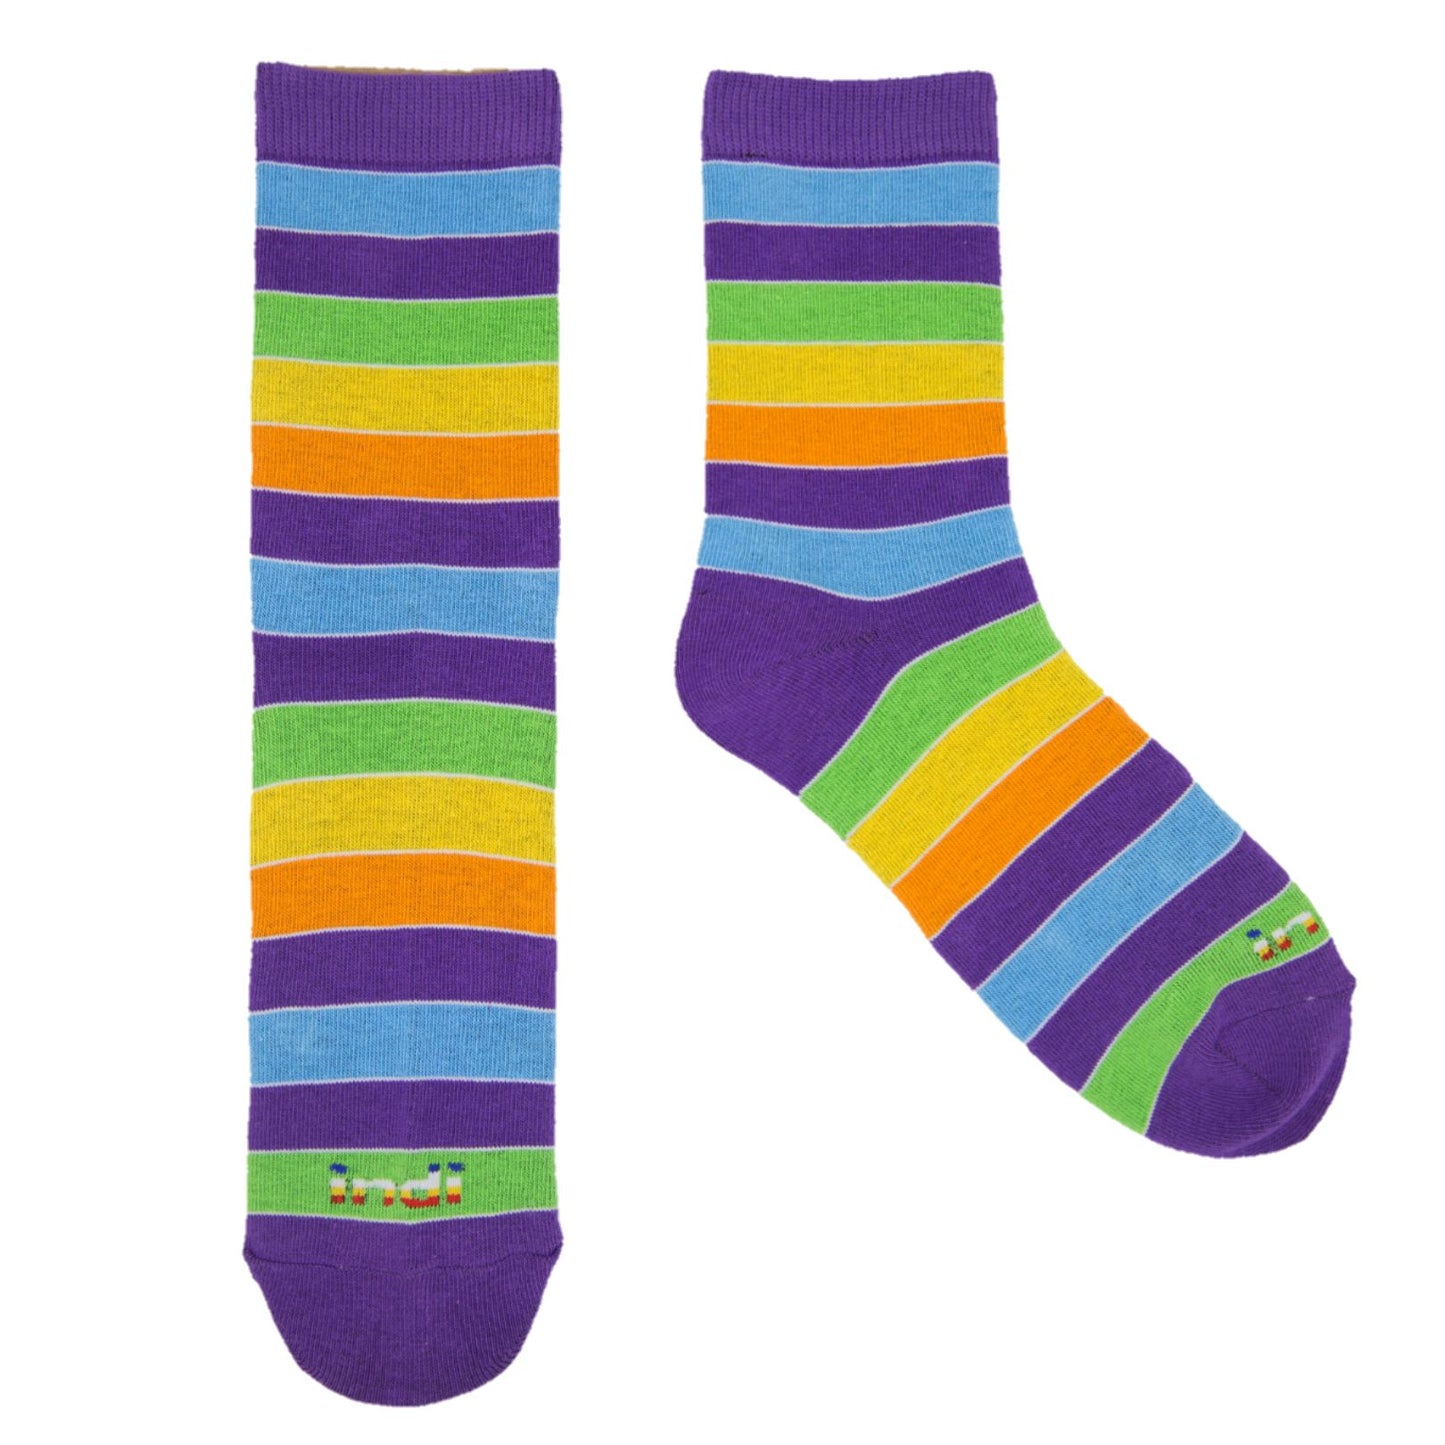 Kantarines (PGYOL)- INDI Heritage Socks (Adult)